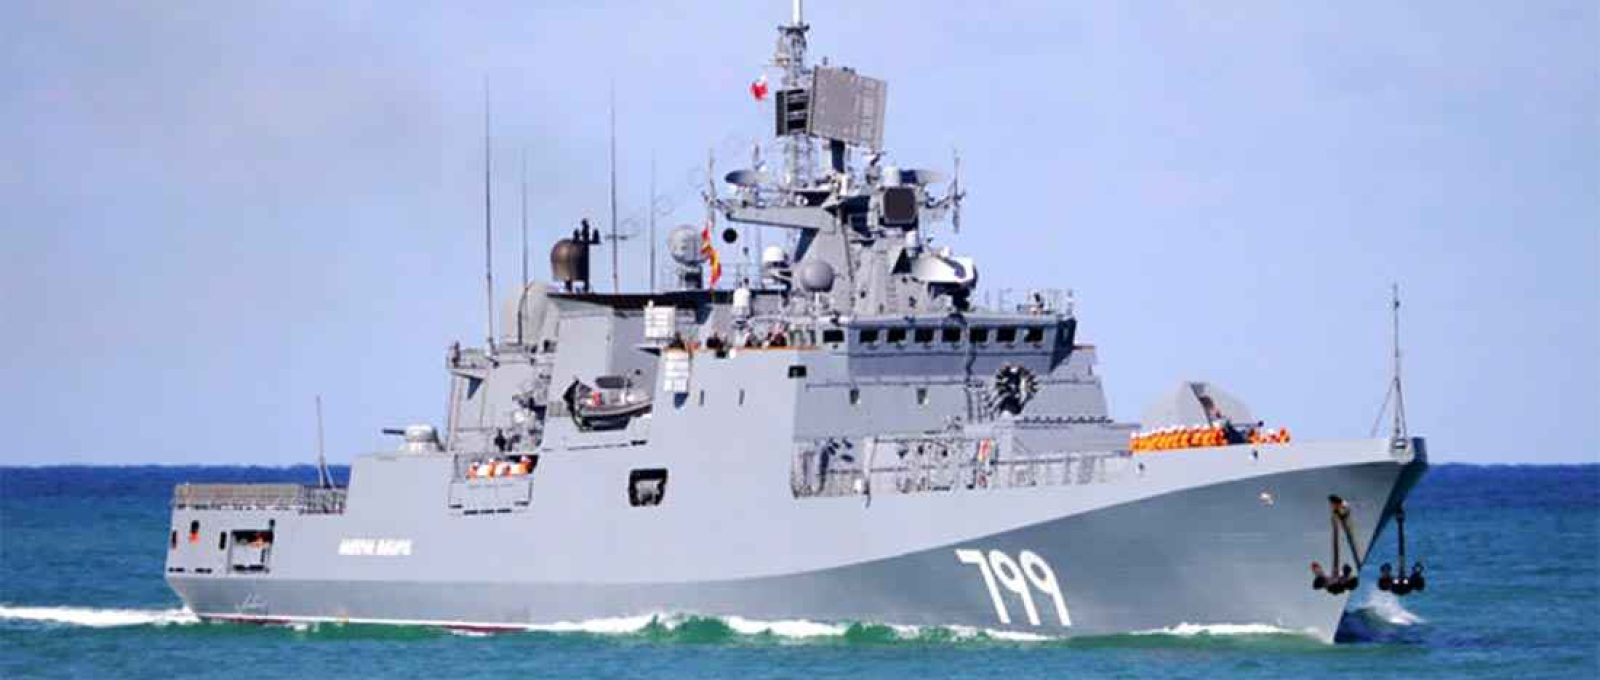 Fragata Almirante Makarov, da Frota da Marinha Russa do Mar Negro  (Foto: MoD Rússia).